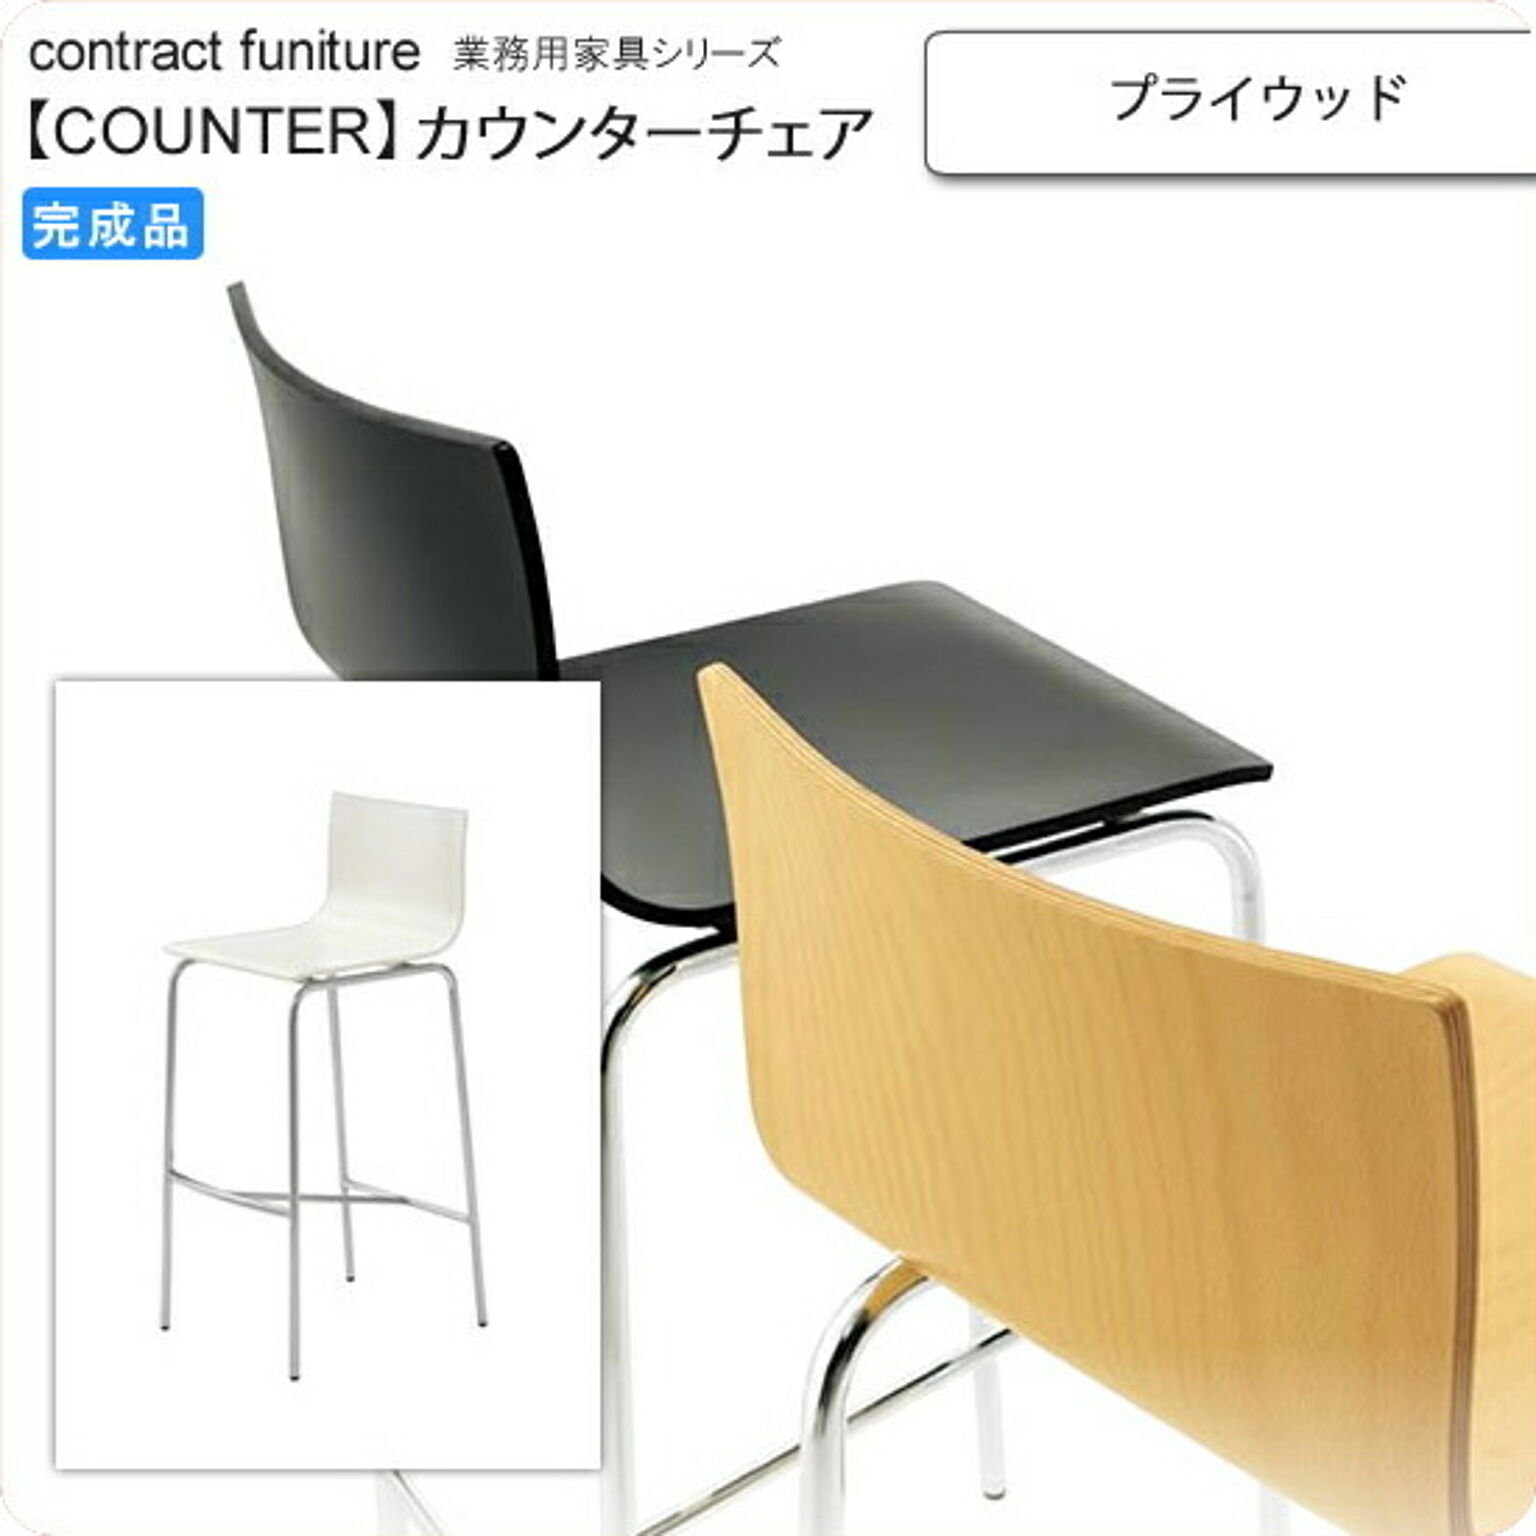 クレス プライウッド カウンターチェア counterシリーズ★ ムントラス